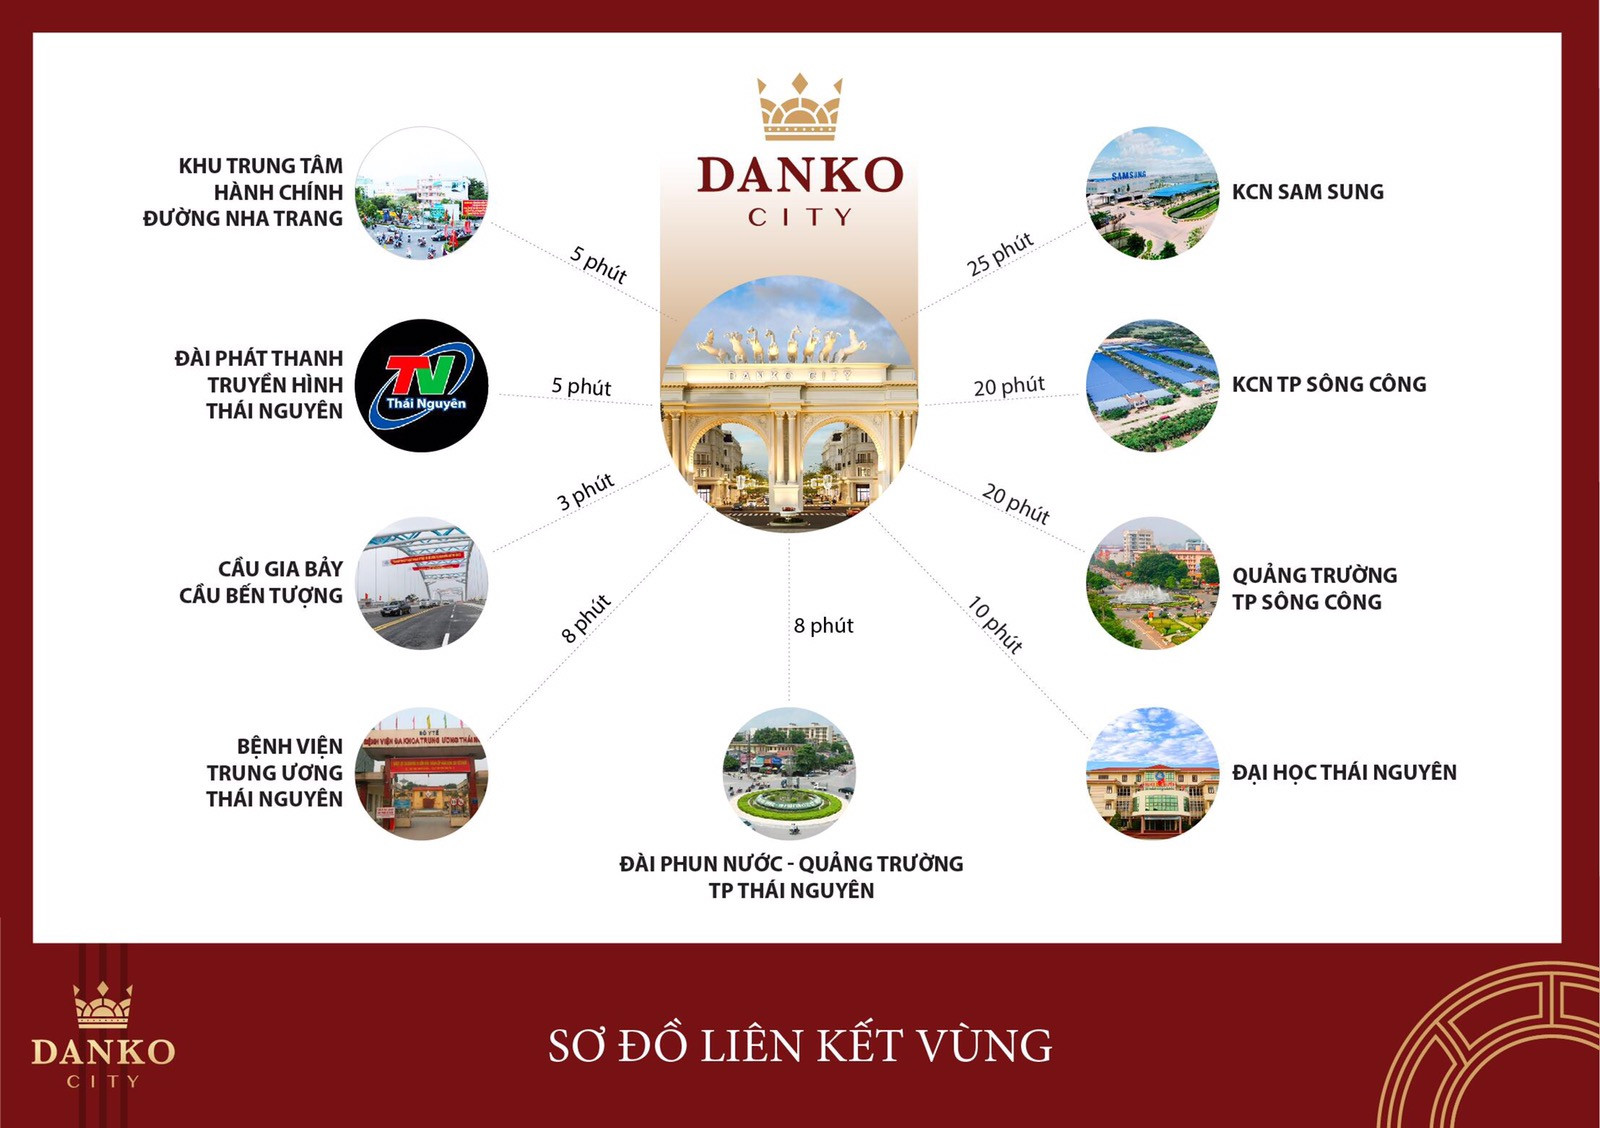 Vị trí “tam cận đắc lộc” trung tâm TP.Thái Nguyên, Danko City thu hút nhà đầu tư